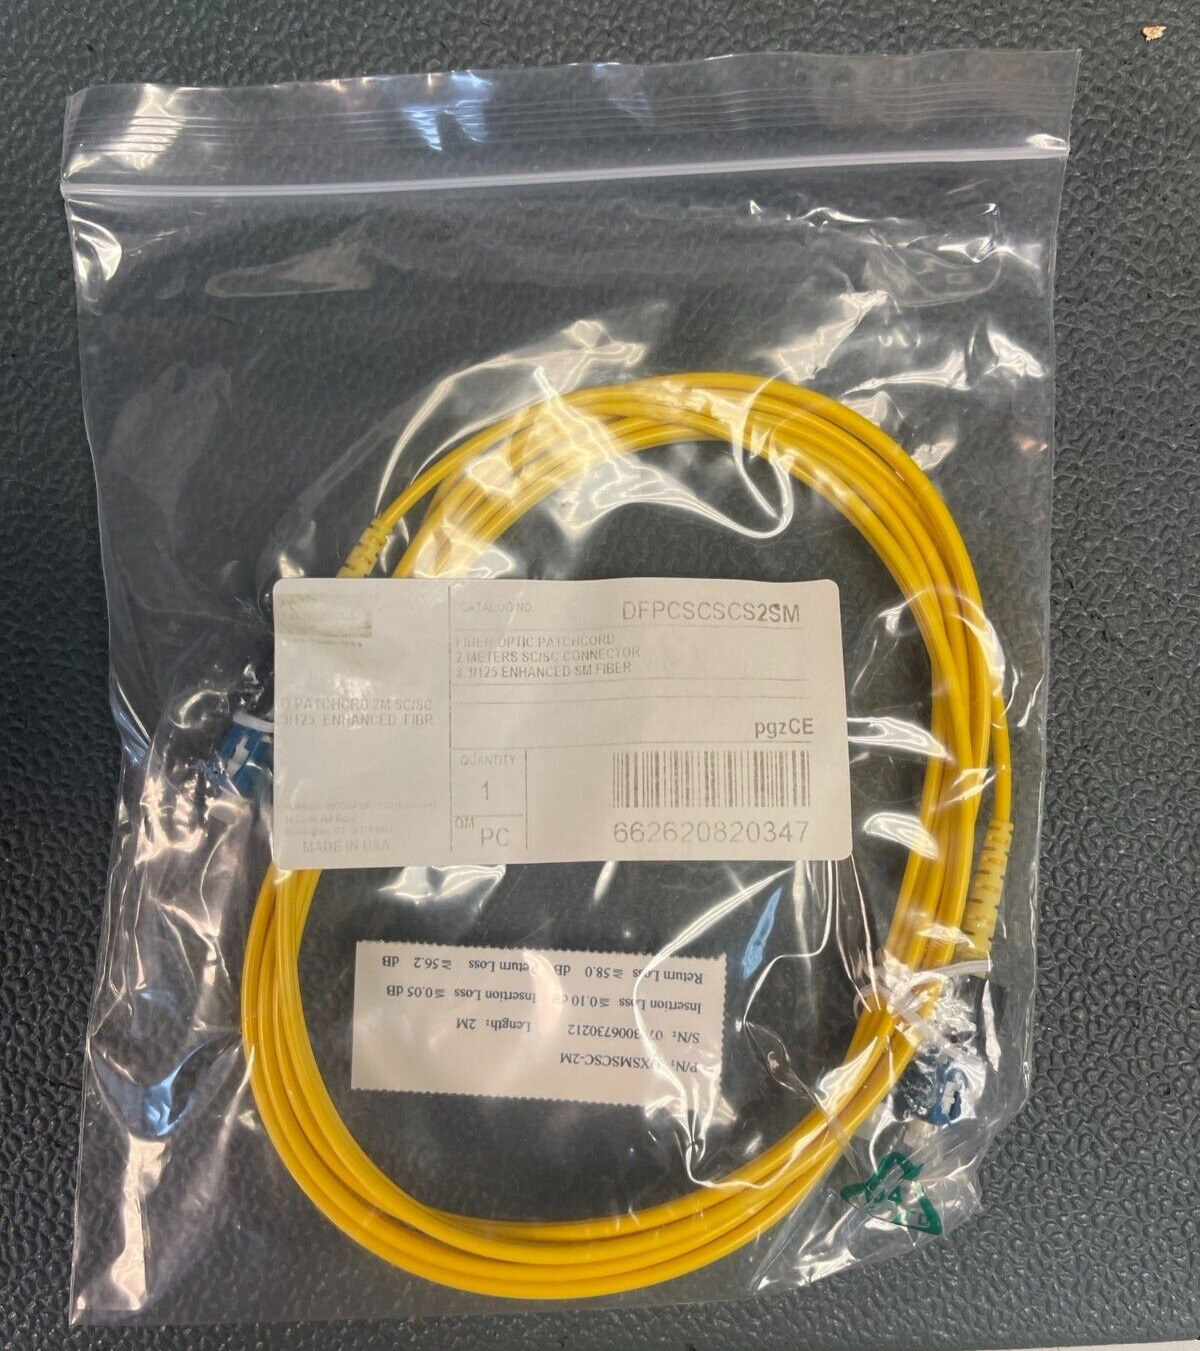 Hubbell Fiber Optic Patch Cord 2 meter SC/SC Duplex (DFPCSCSCS2SM )